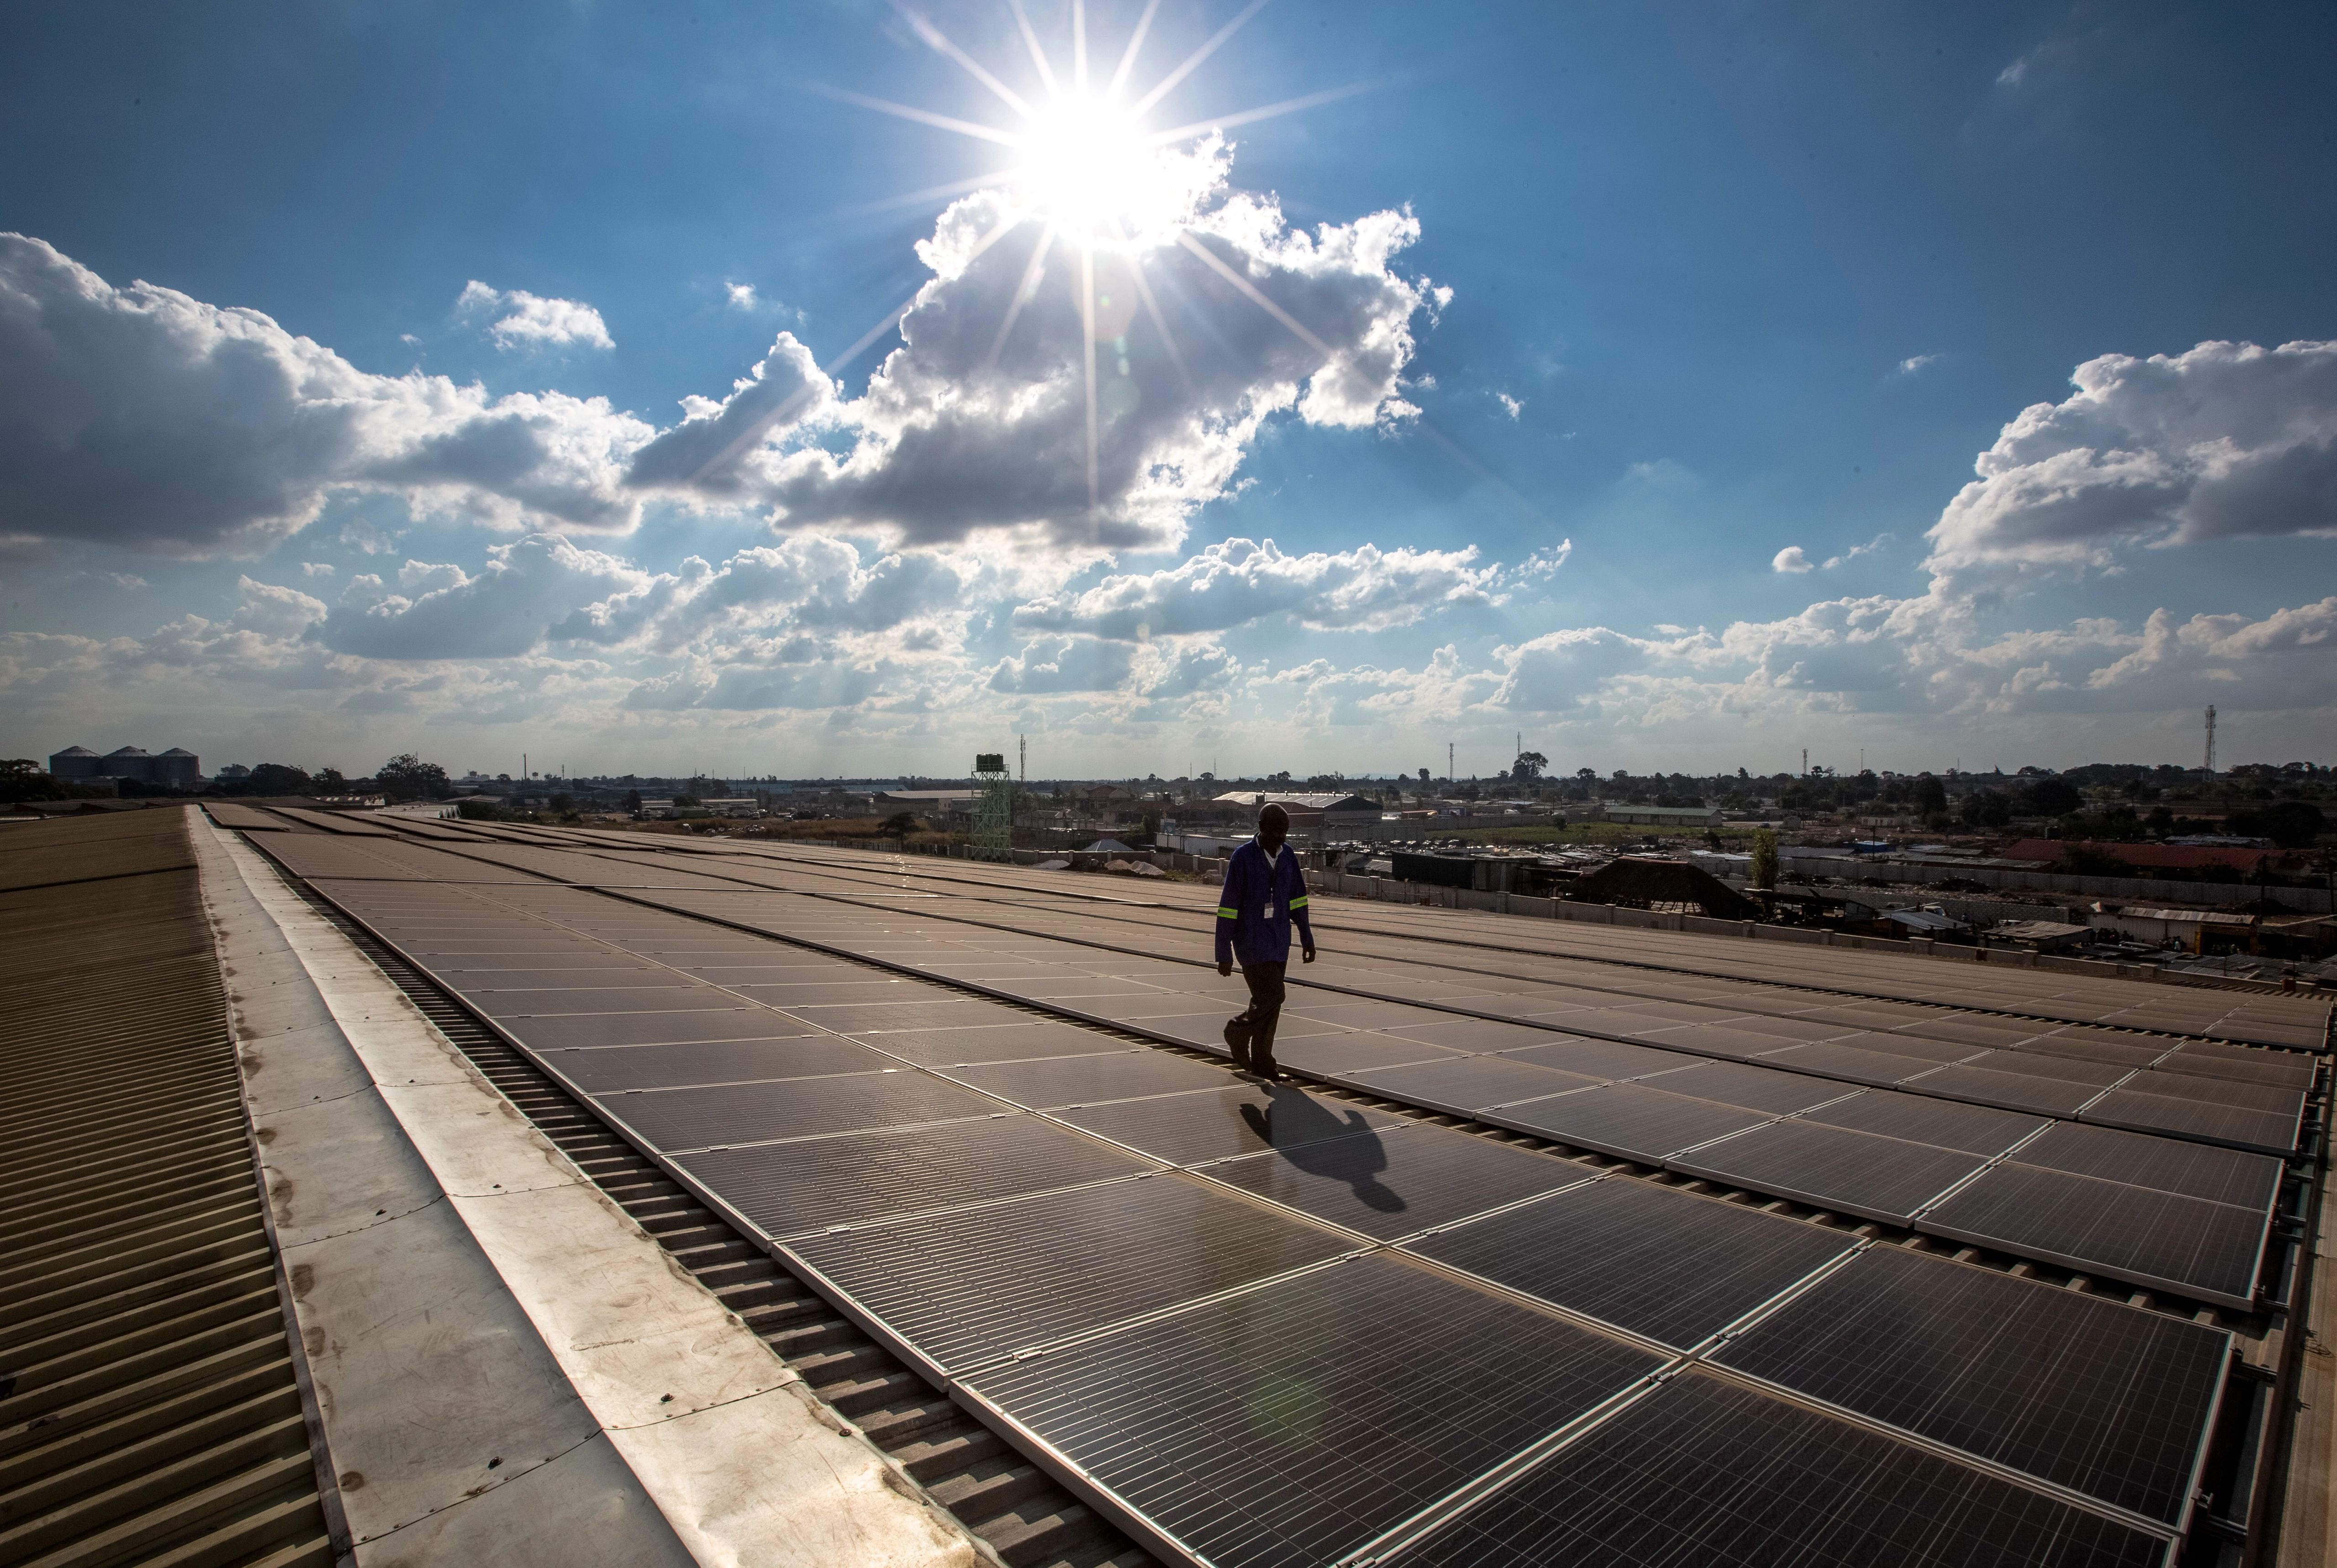 A technician walks among solar panels against a blue sky.